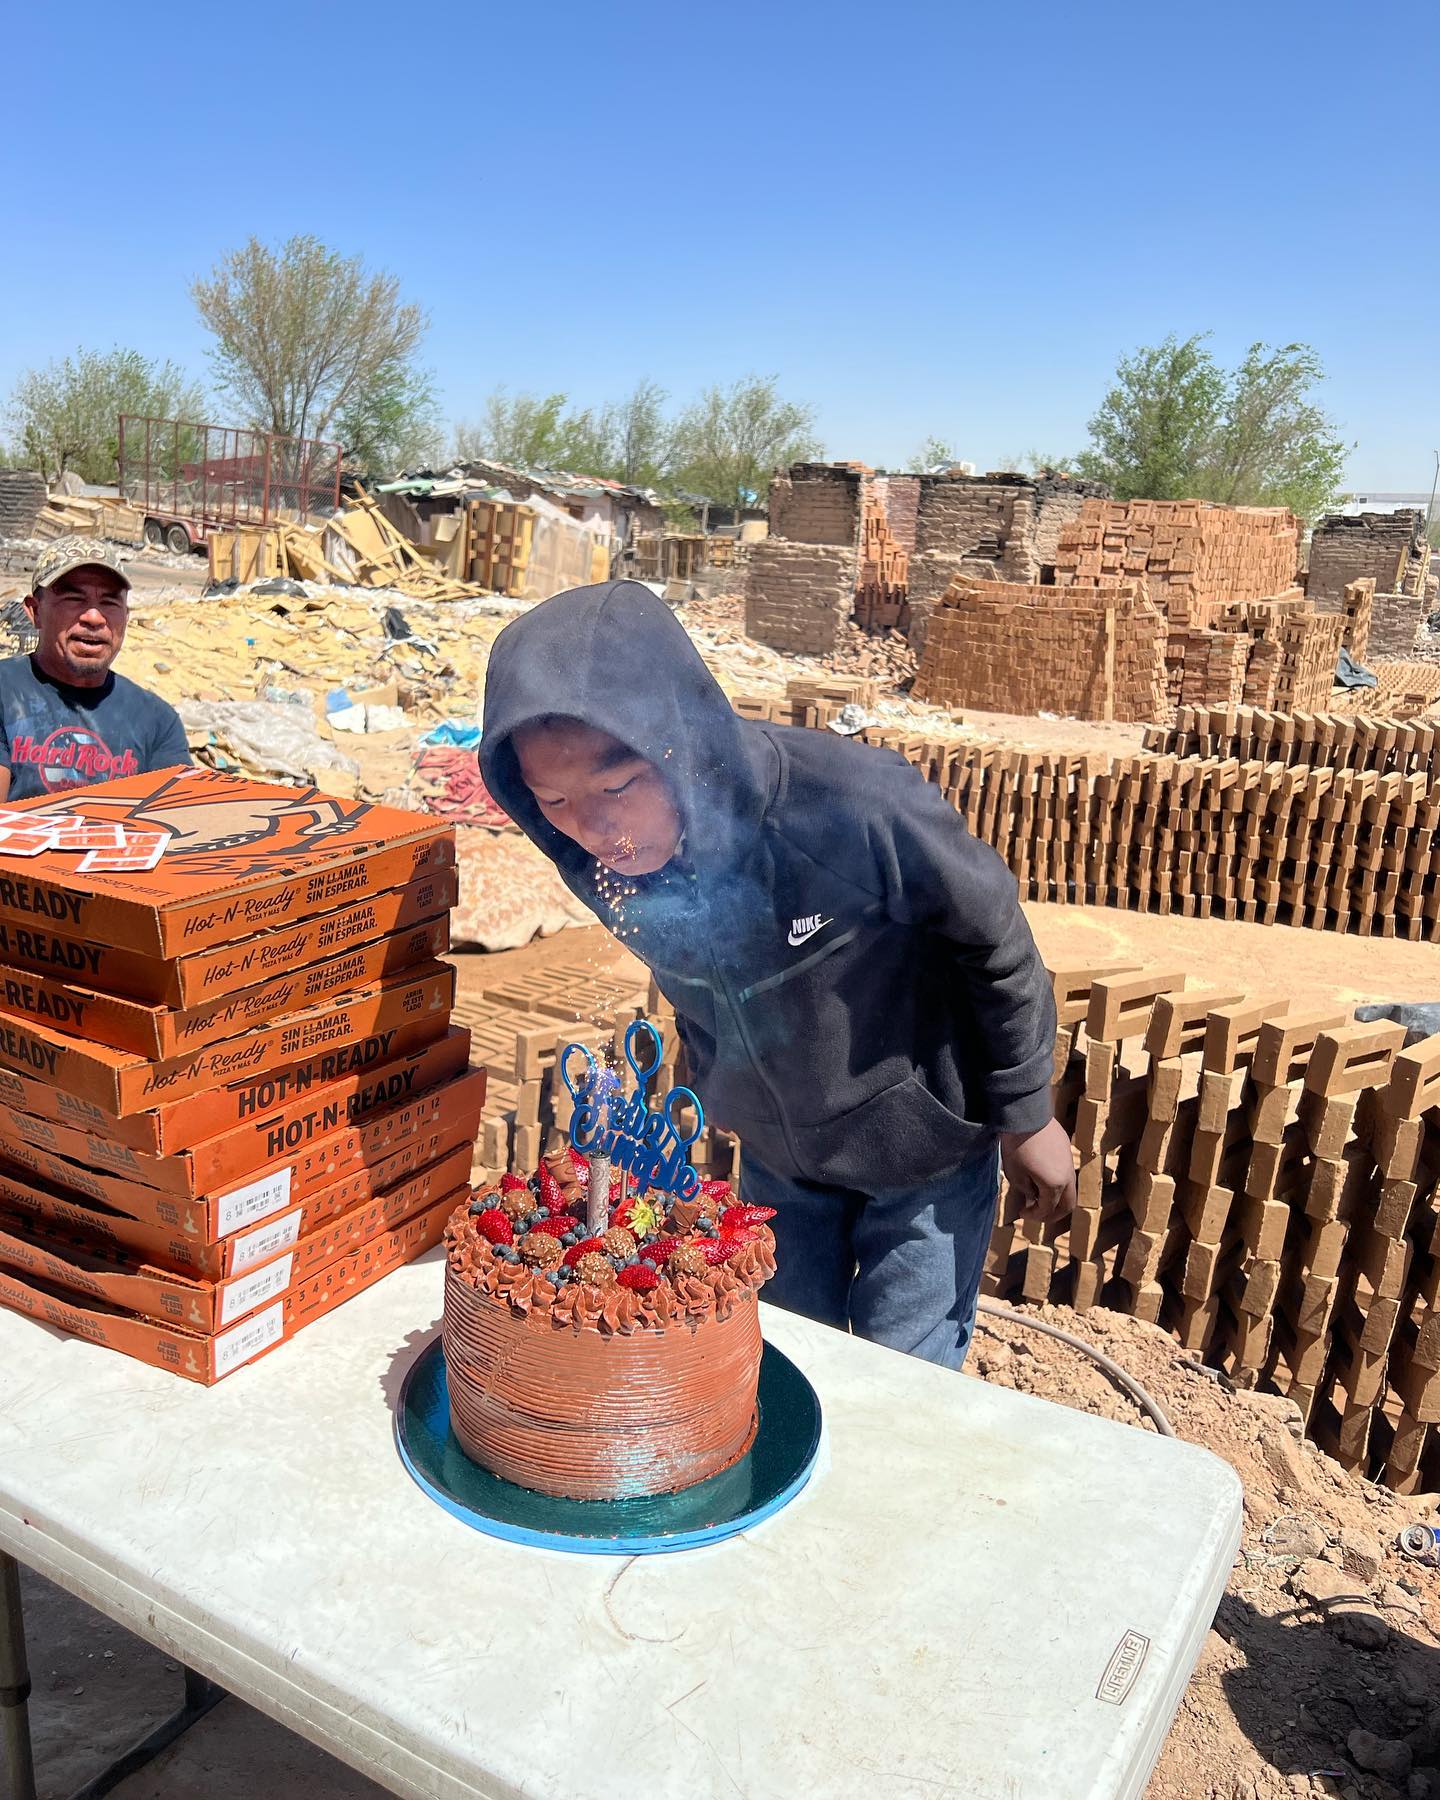 Cumplen sueño de niño que trabaja en las Ladrilleras celebrando su  cumpleaños con pizza y pastel - LA Z  FM